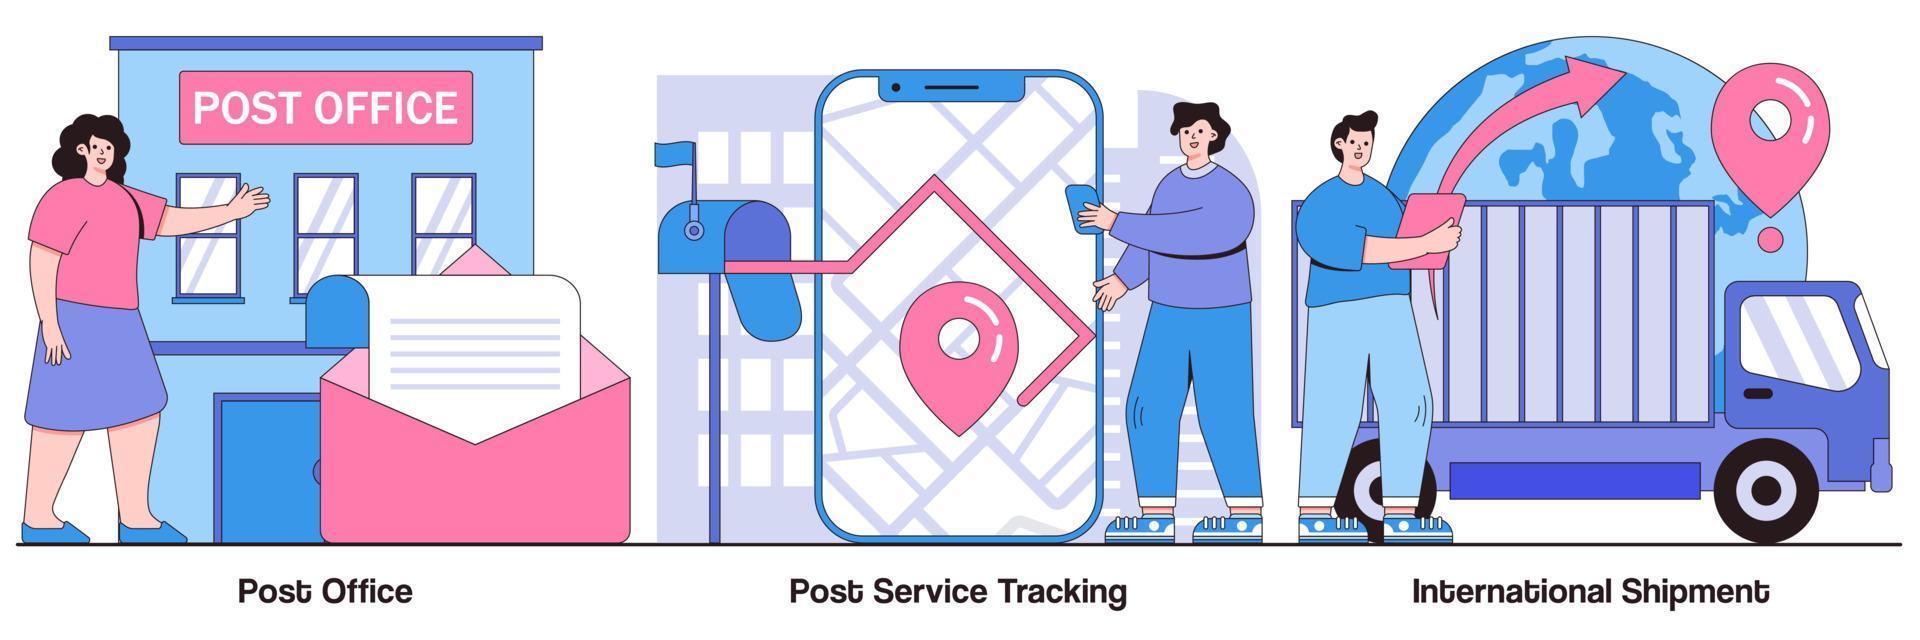 pacco illustrato dell'ufficio postale, del servizio postale e della spedizione internazionale vettore